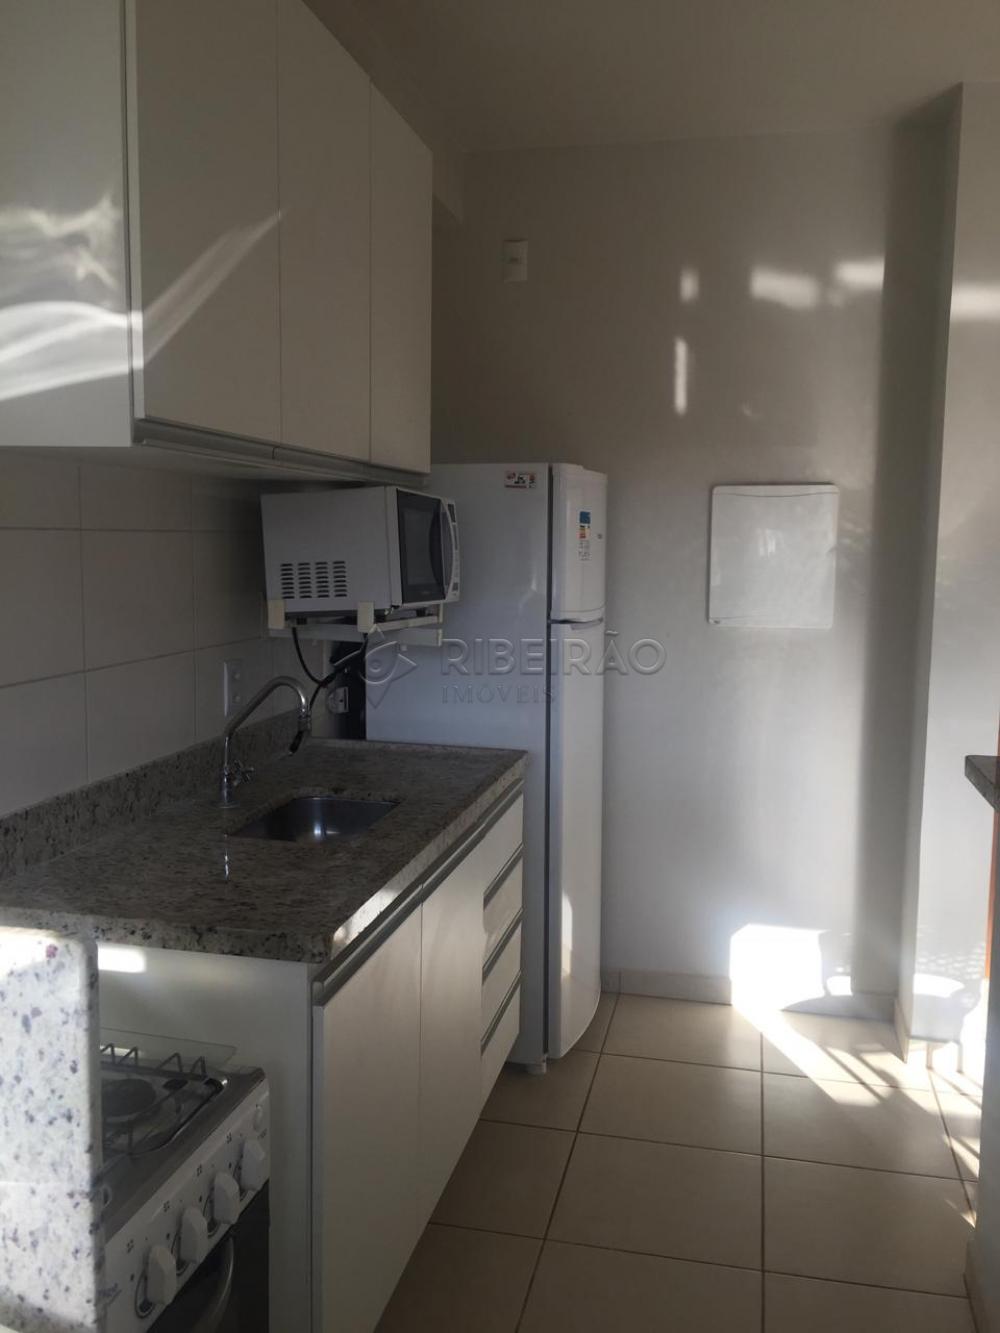 Comprar Apartamento / Flat / Loft / Kitnet em Ribeirão Preto R$ 269.000,00 - Foto 5